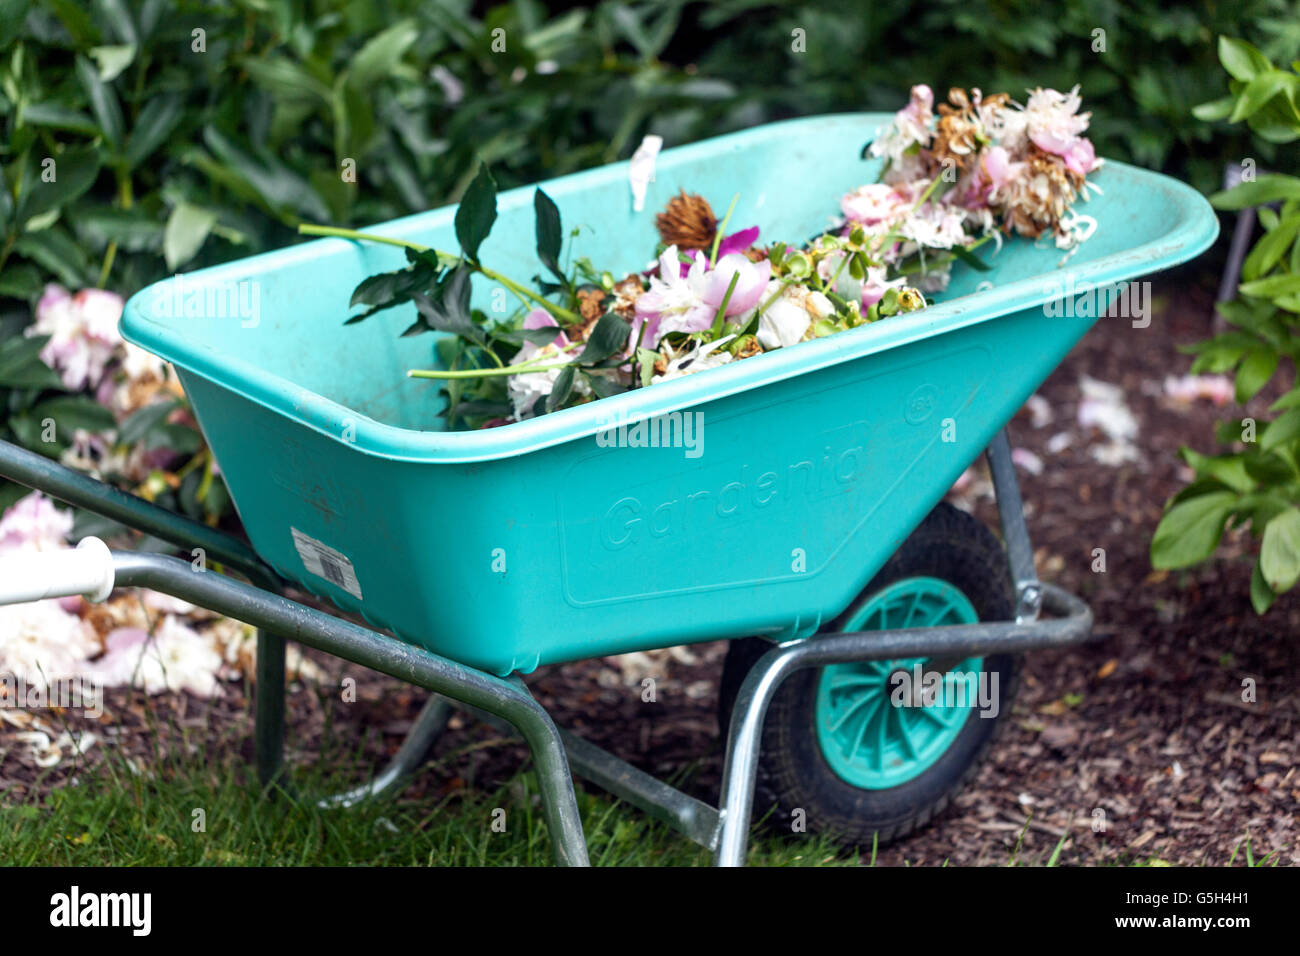 Fiori di peonie selvatiche nella carriola da giardino fiori steli e foglie mortali saranno portati a comporre lavori di giardinaggio a giugno Foto Stock